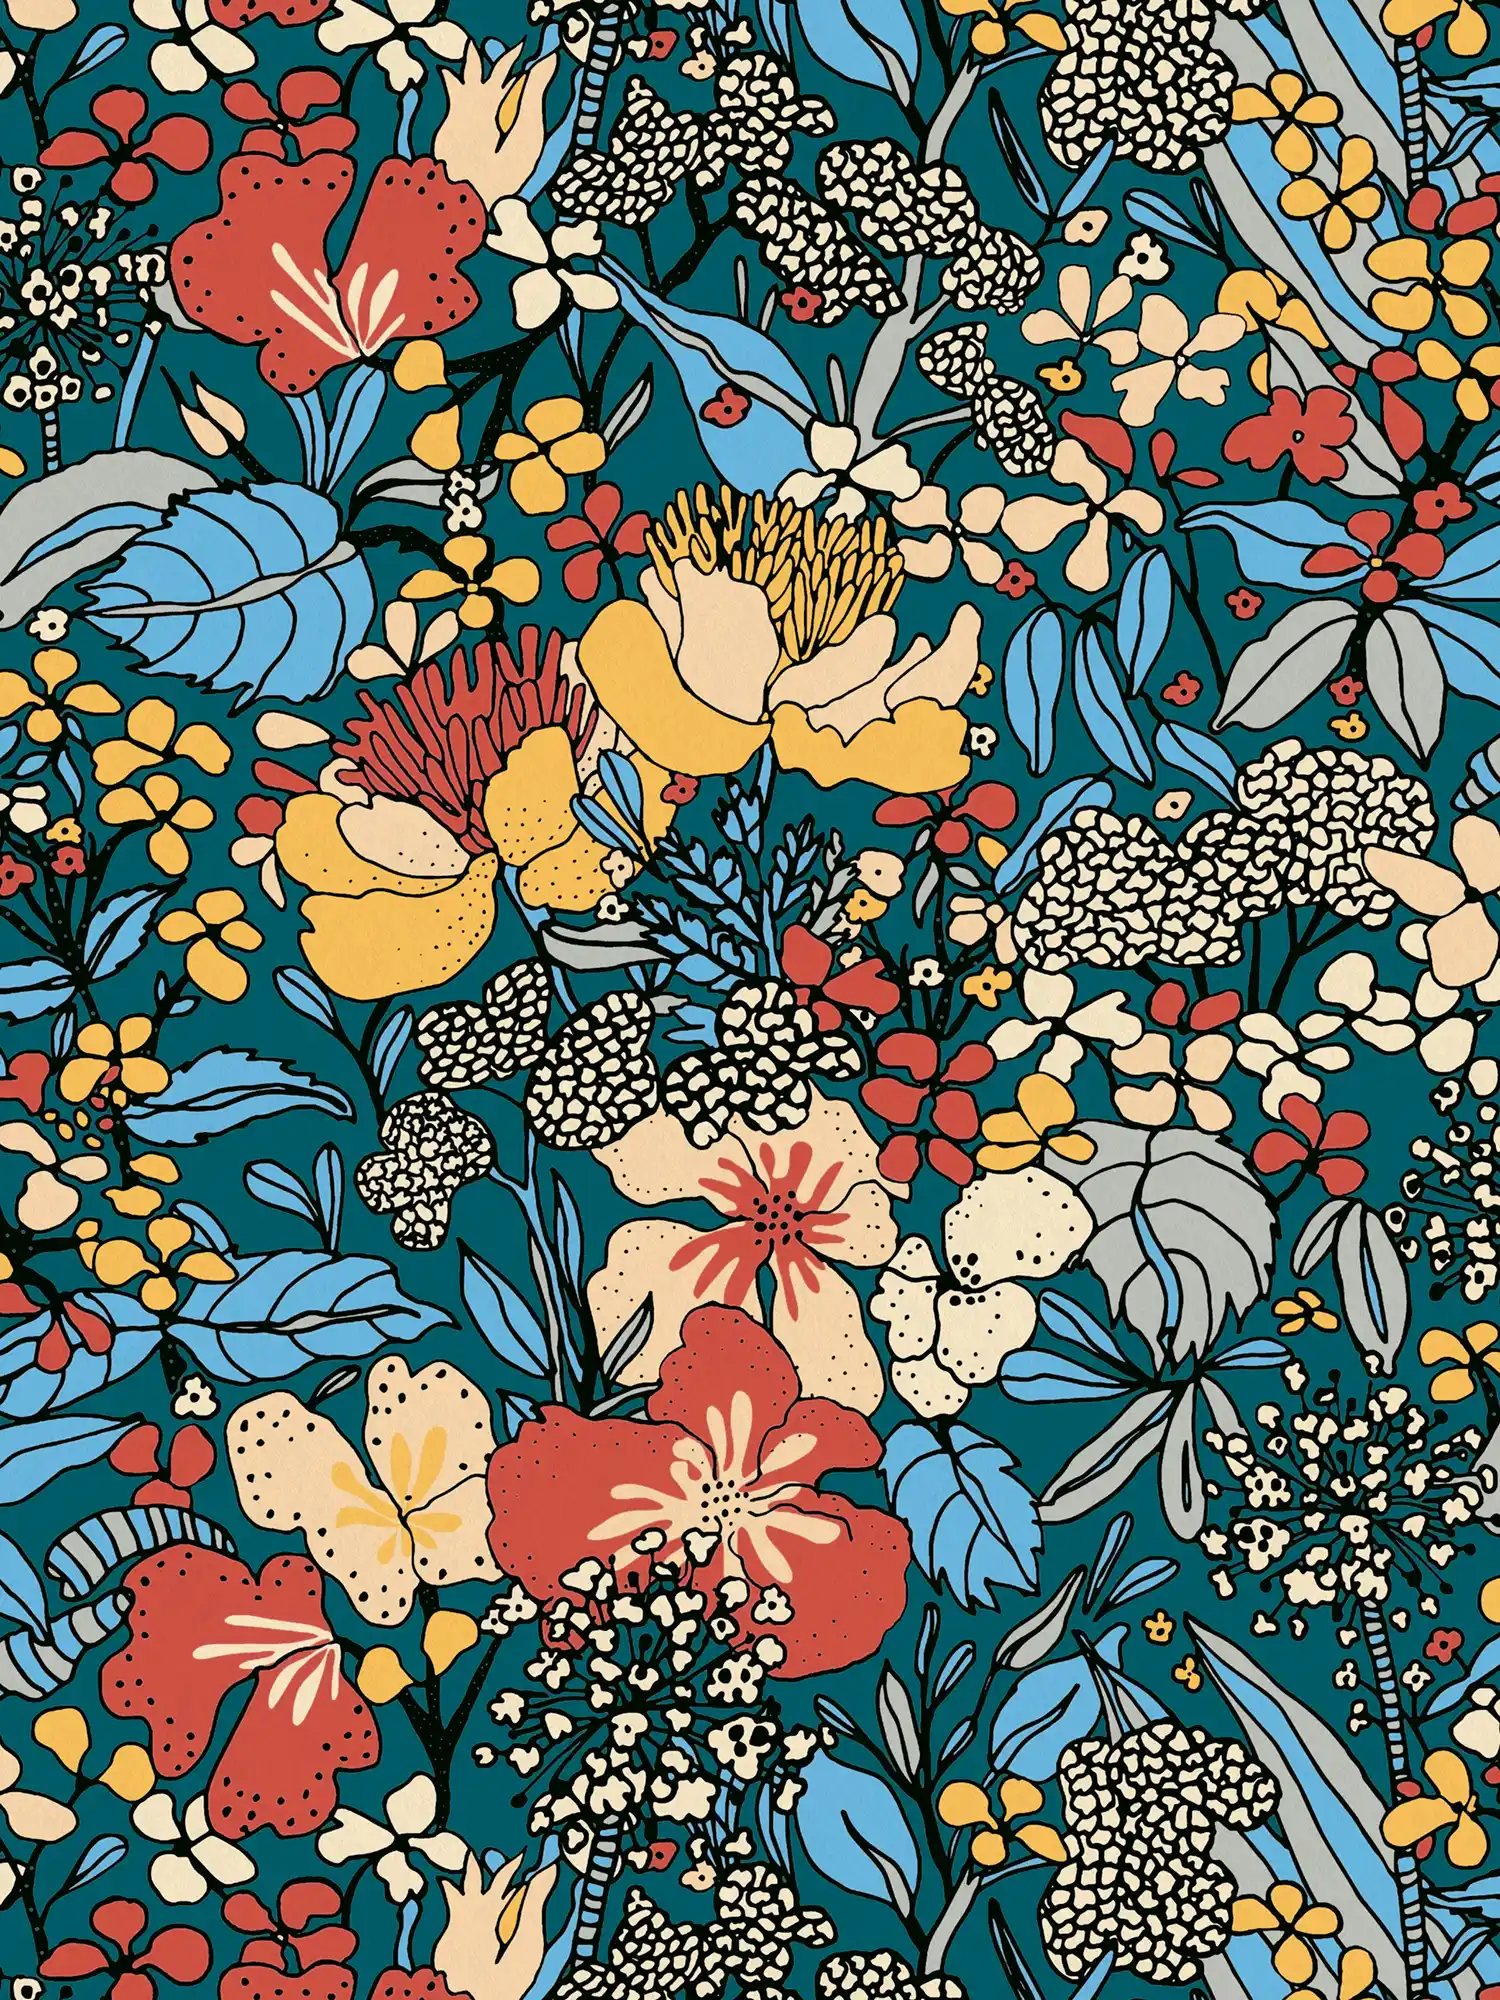 Papier peint intissé 70 rétro design fleuri - multicolore, bleu, orange
